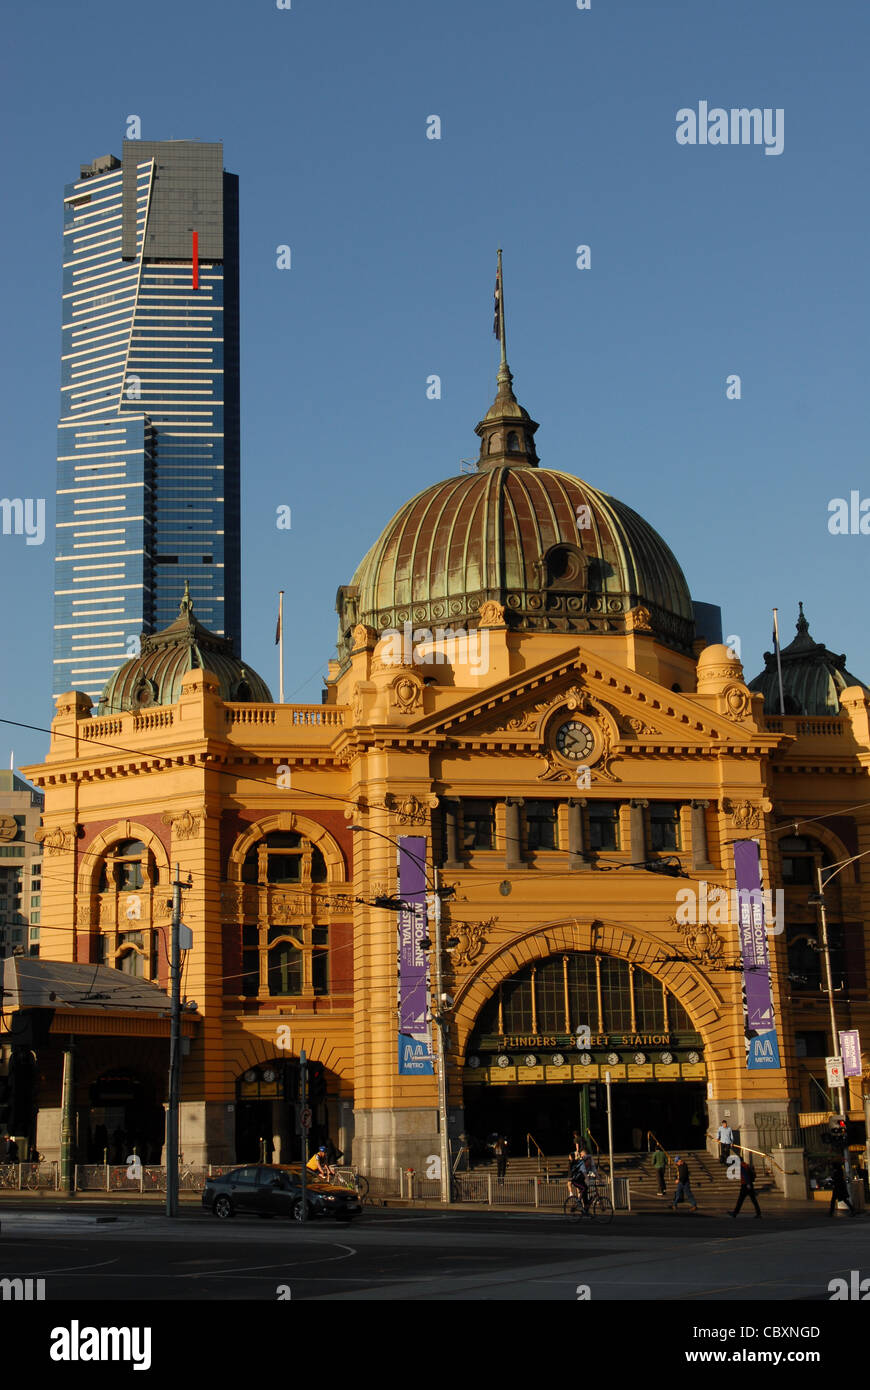 Lugares conocidos: la moderna torre Eureka histórico y de la estación de tren de Flinders Street en el centro de Melbourne, Victoria Foto de stock